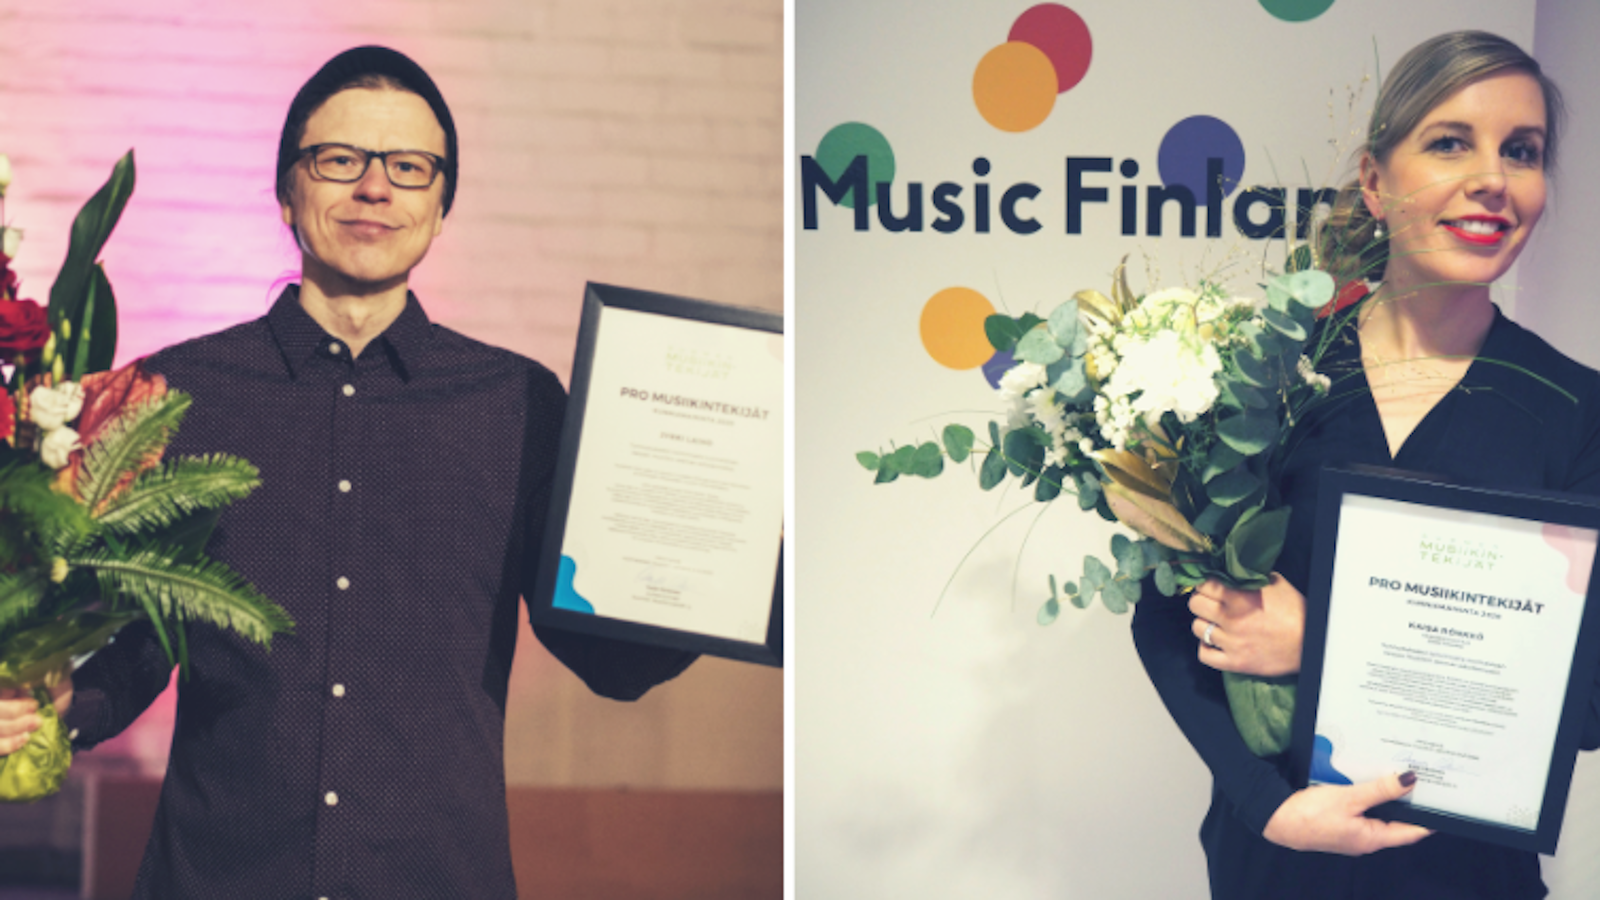 Kuvassa on oikealla Jyrki Laiho onnittelukukat ja kunniakirja käsissään ja oikealla Kaisa Rönkkö kukkineen ja kunniakirjoineen.